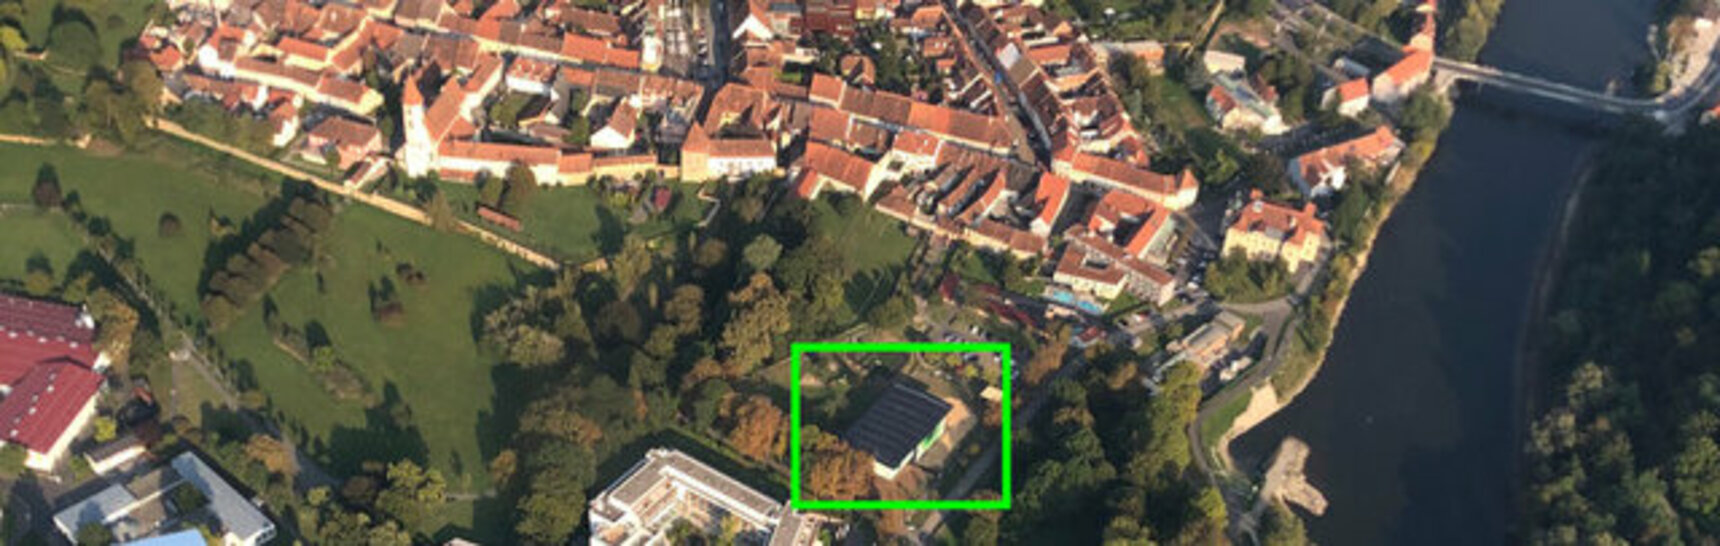 Luftaufnahme von Bad Radkersburg mit eingezeichnetem Standort des mobilen Pavillons